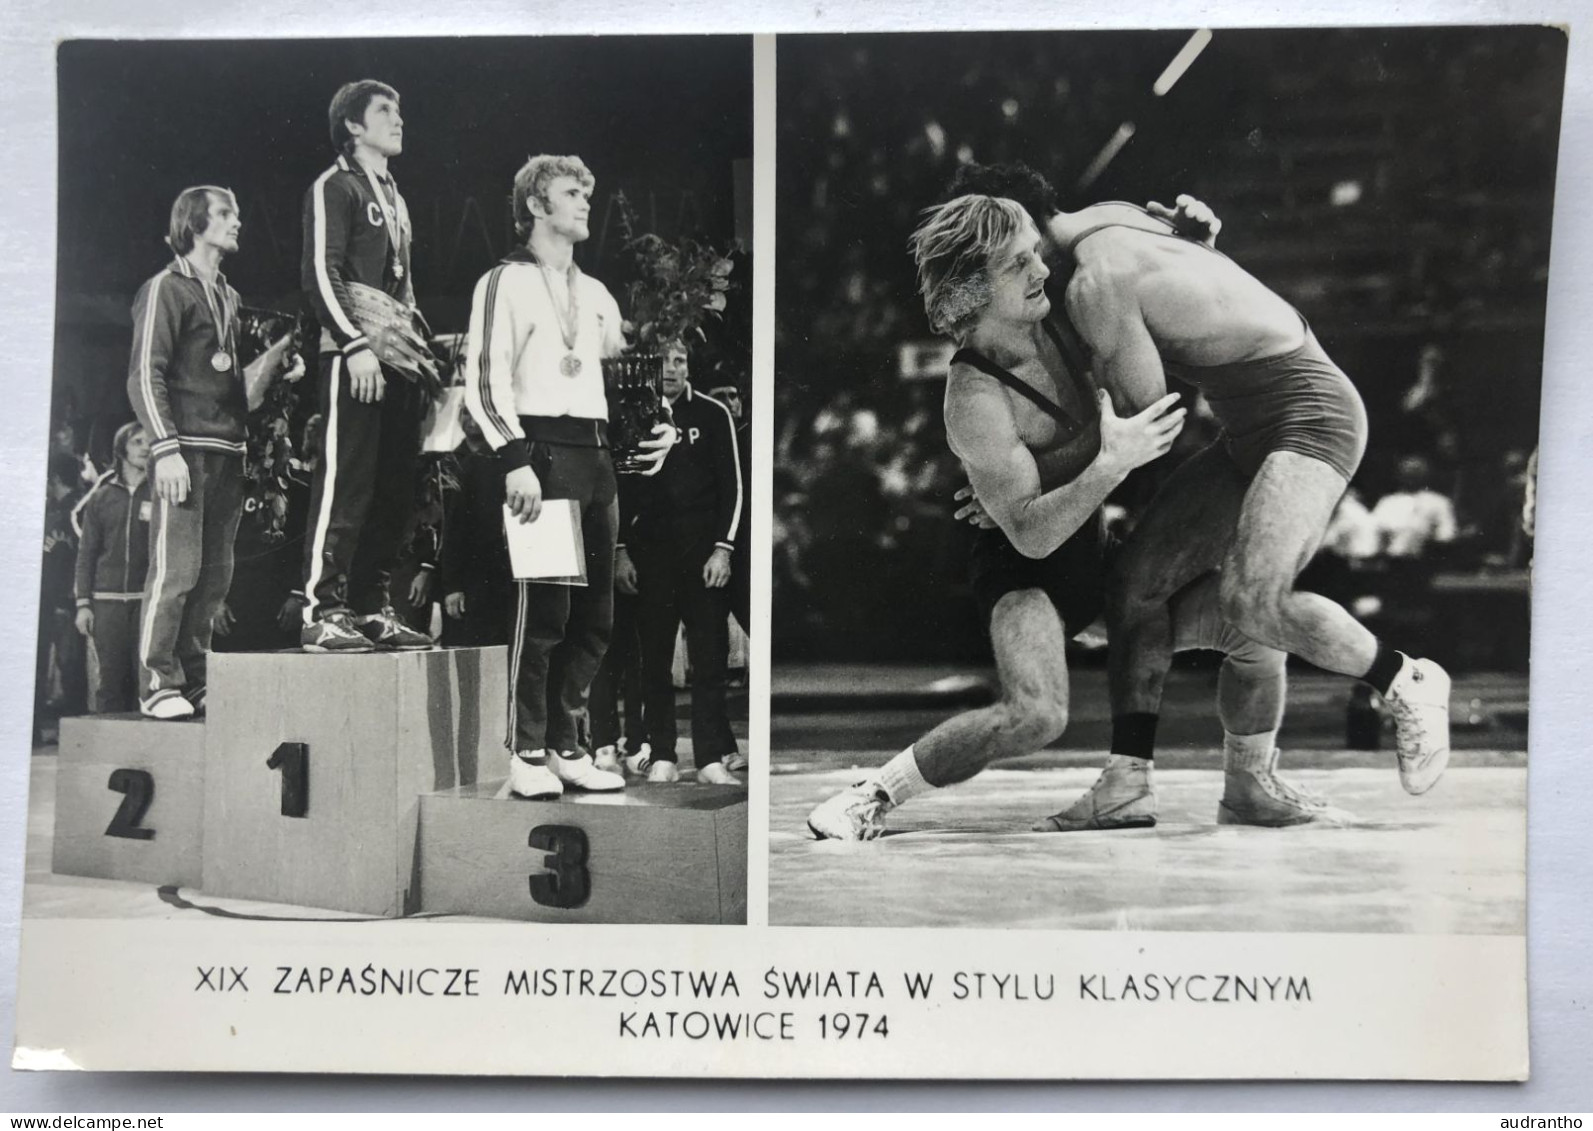 Carte Postale Józef Lipień - Médaillé En Lutte Gréco-romaine - Katowice 1974 - Ringen